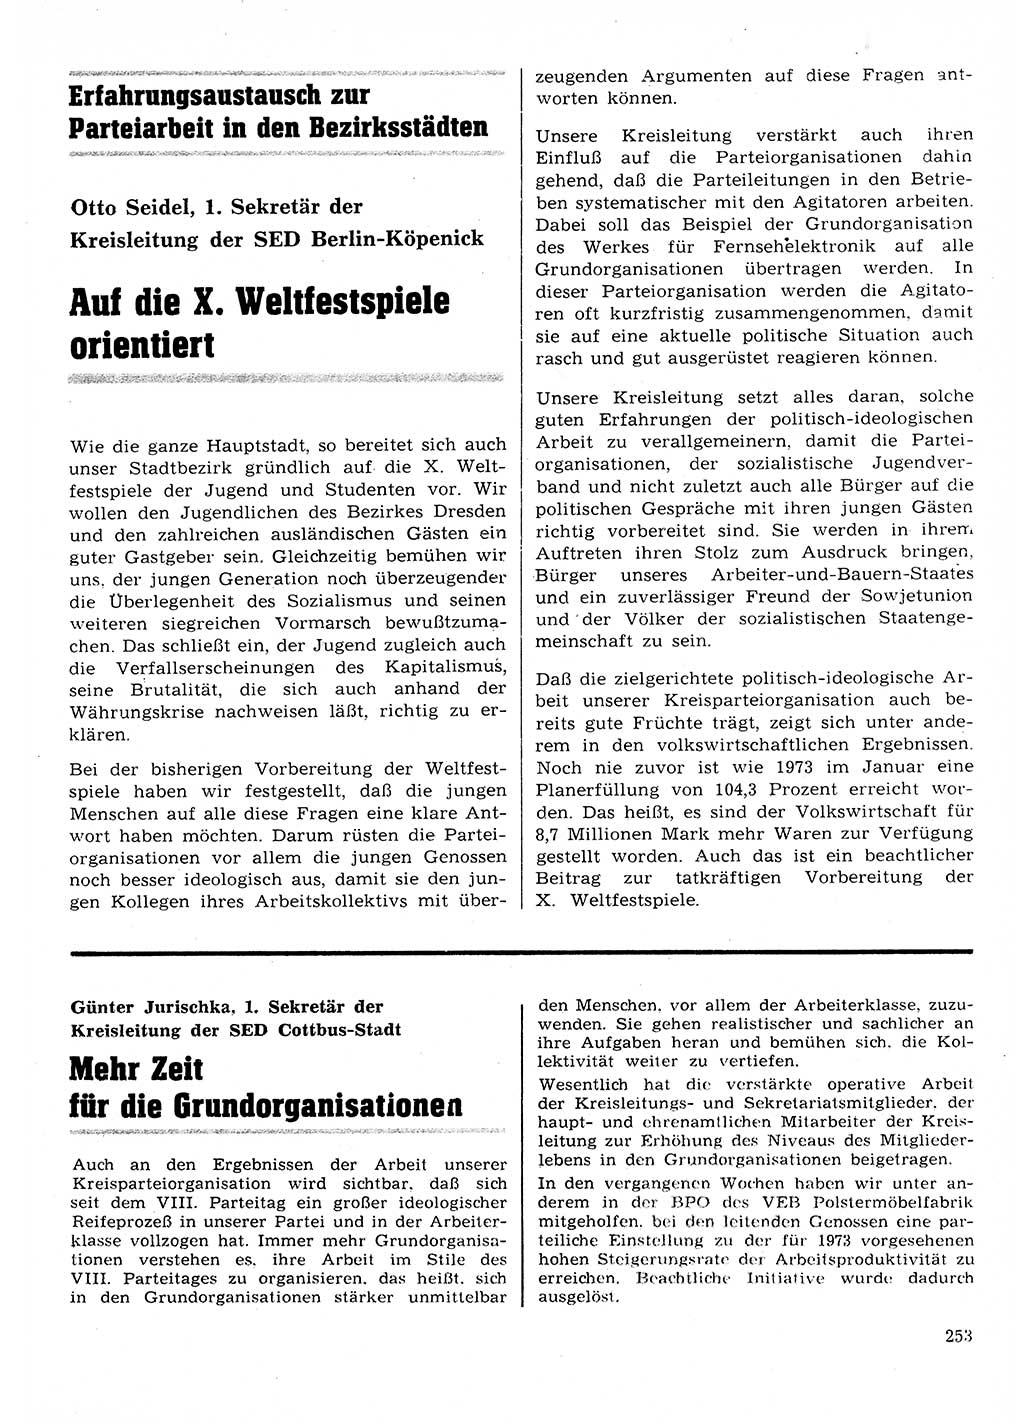 Neuer Weg (NW), Organ des Zentralkomitees (ZK) der SED (Sozialistische Einheitspartei Deutschlands) für Fragen des Parteilebens, 28. Jahrgang [Deutsche Demokratische Republik (DDR)] 1973, Seite 253 (NW ZK SED DDR 1973, S. 253)